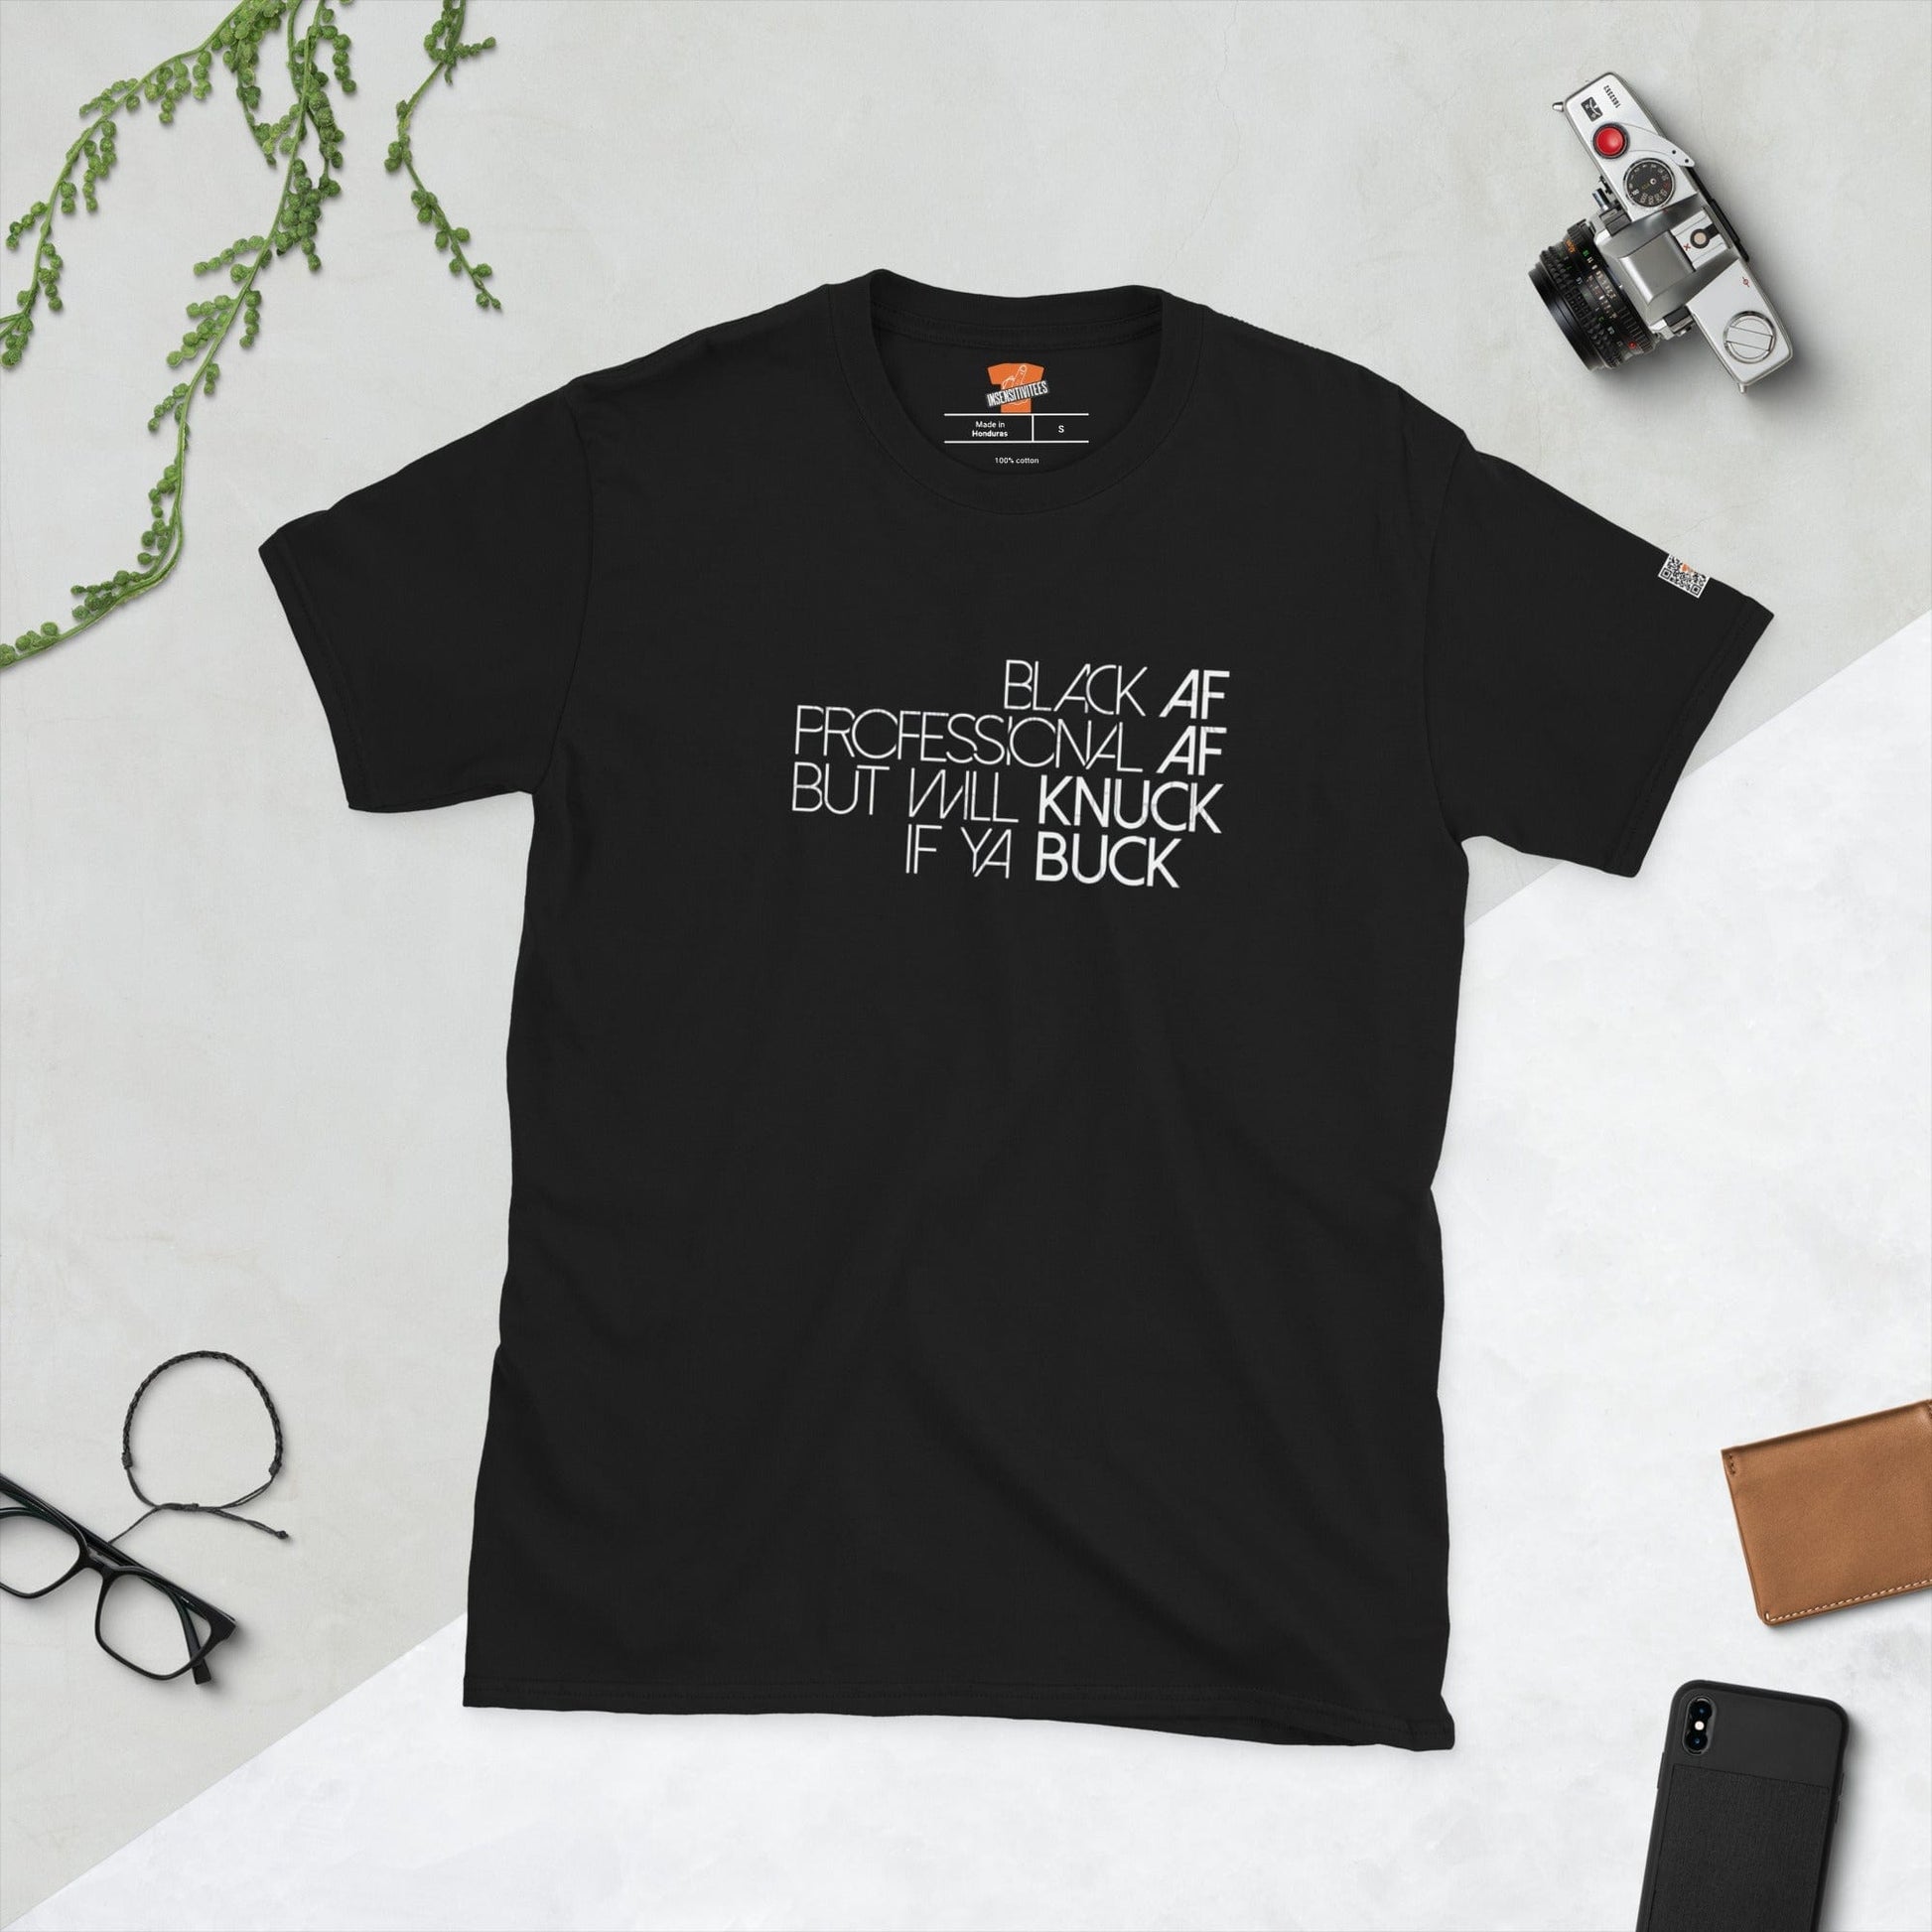 InsensitiviTees™️ S Black AF, Professional AF Unisex T-Shirt